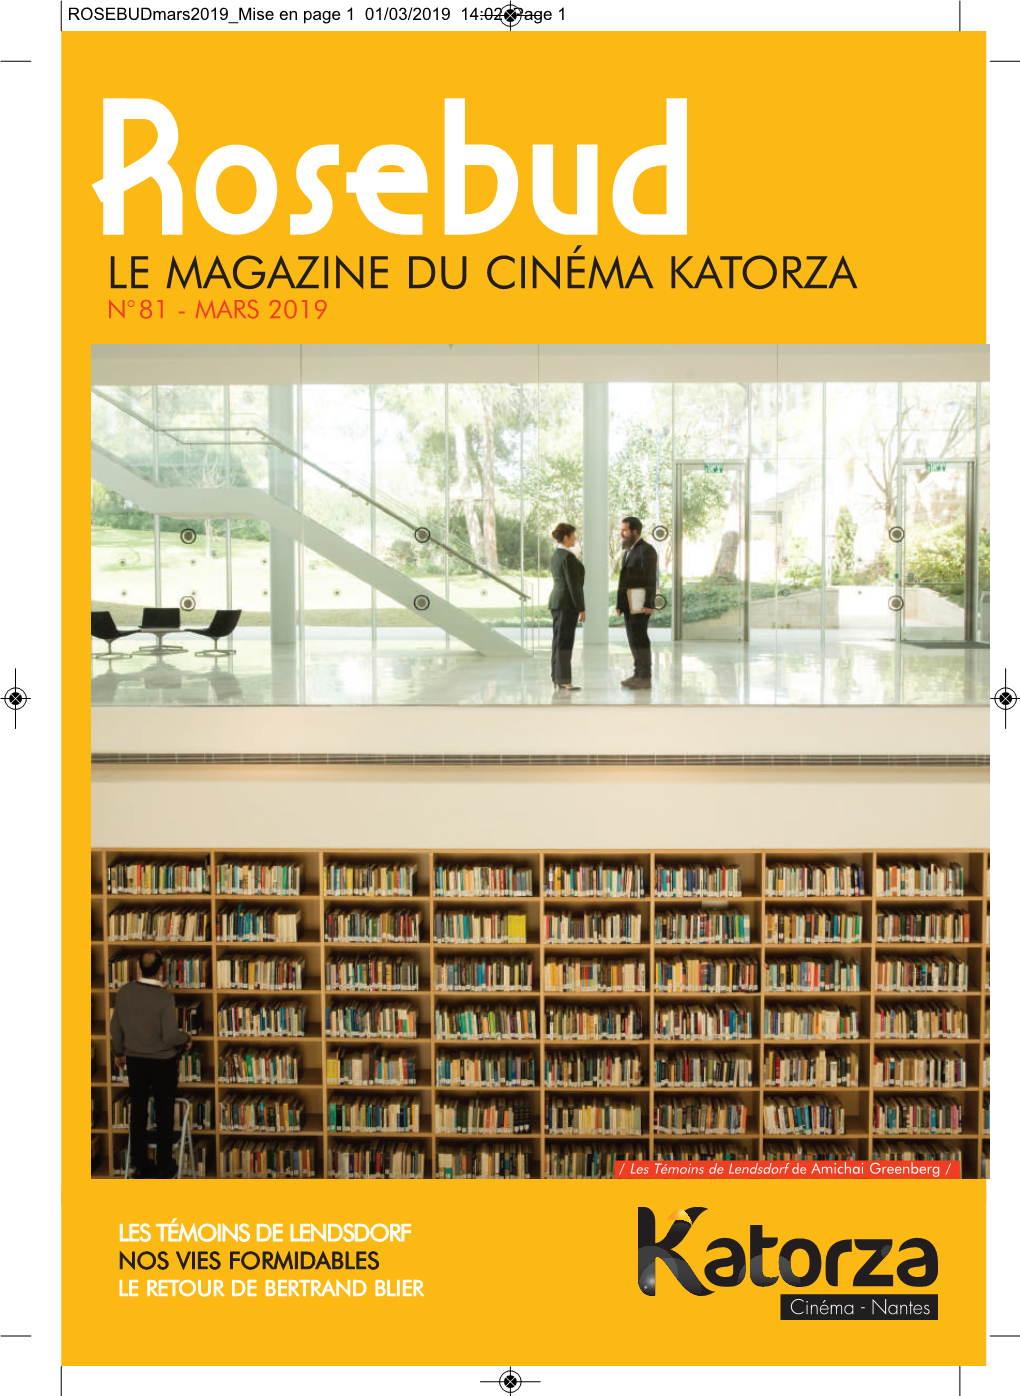 Mise En Page 1 01/03/2019 14:02 Page 1 Rosebud Le Magazine Du Cinéma Katorza N° 81 - Mars 2019